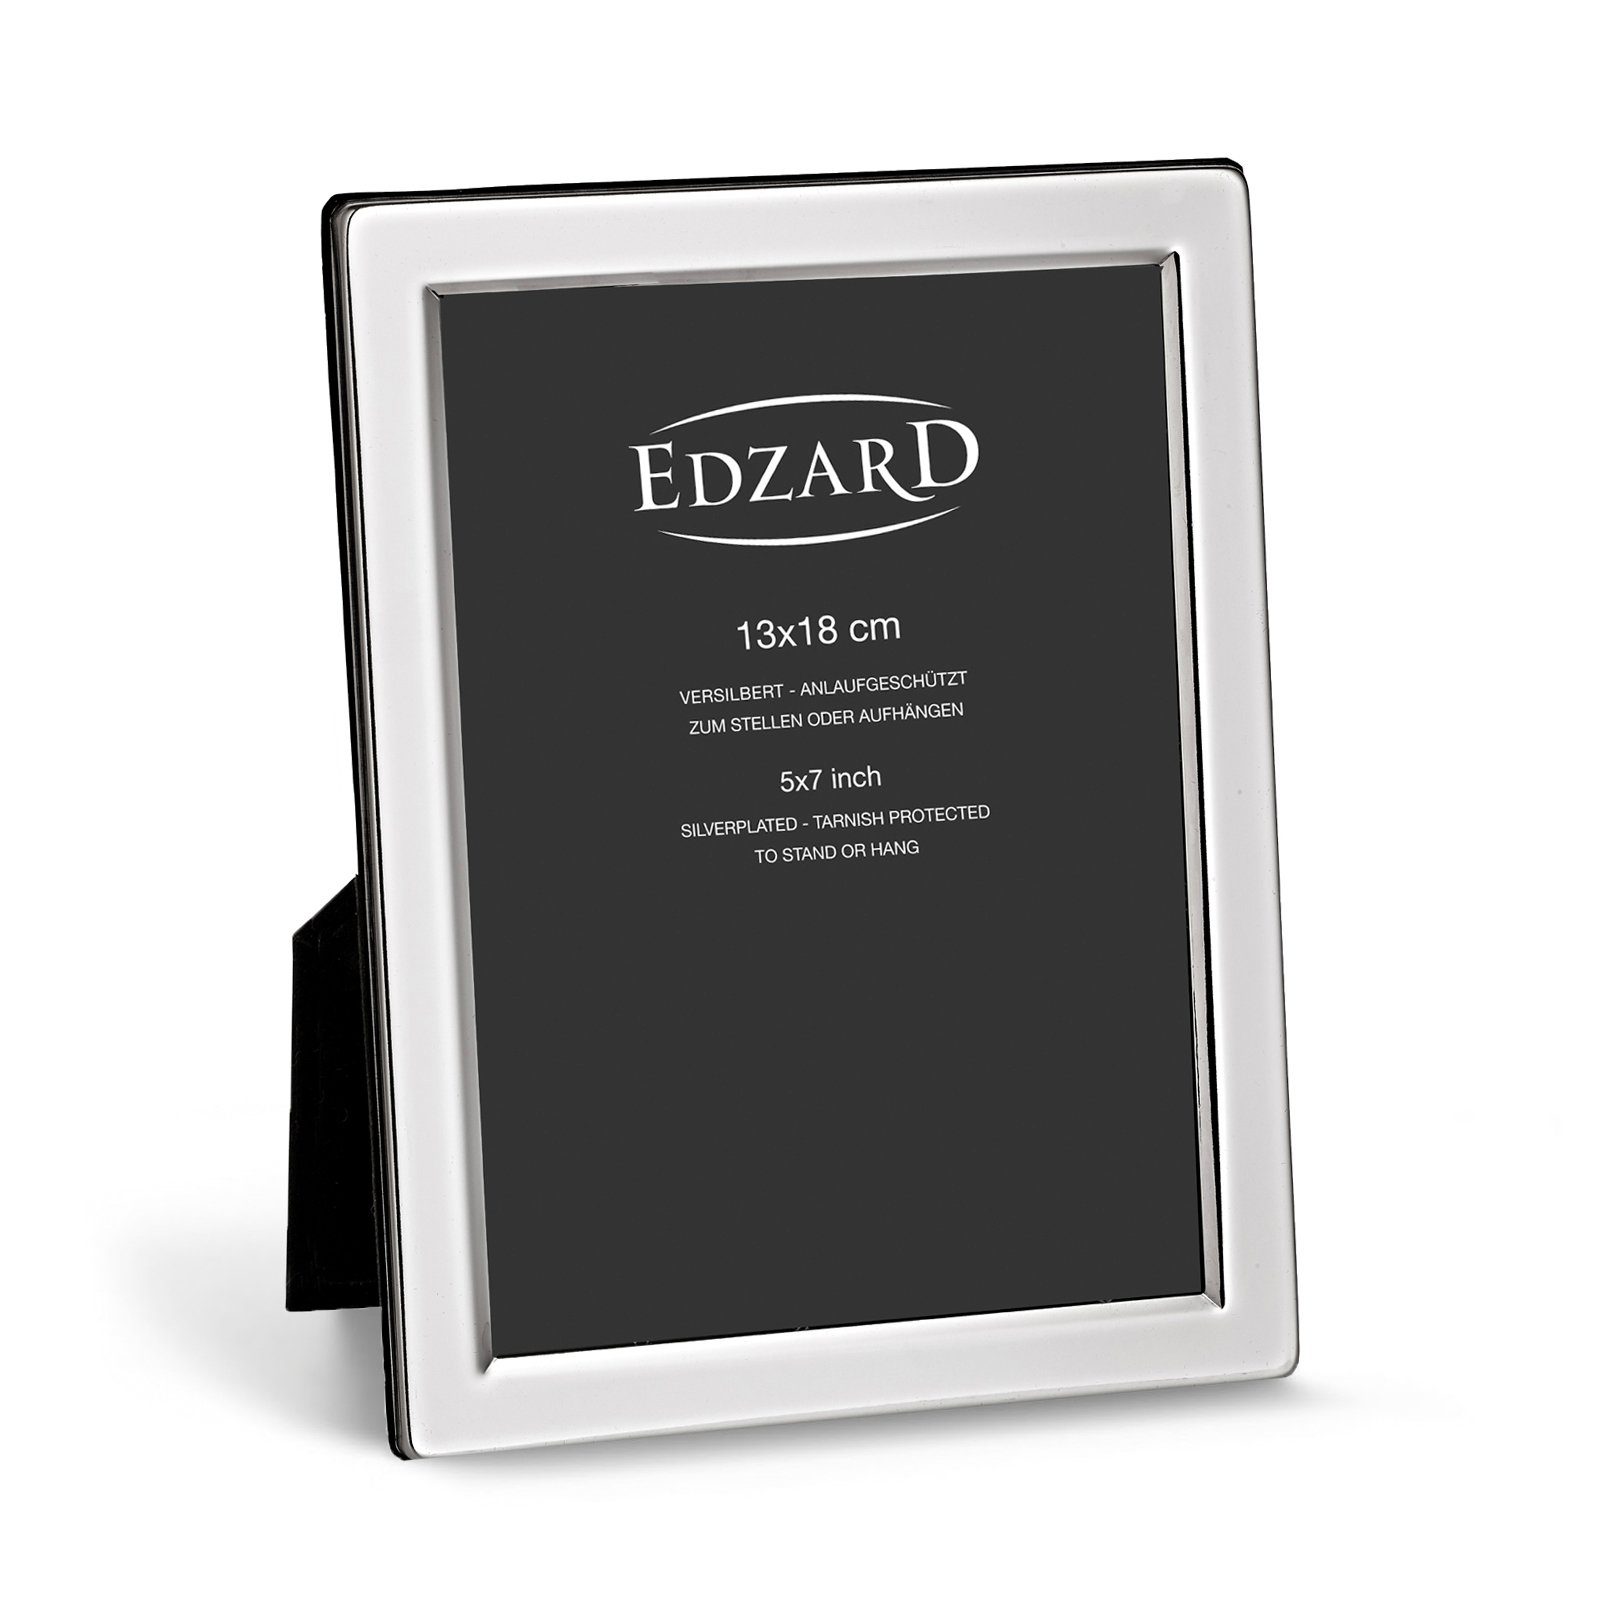 EDZARD Рамки Salerno, versilbert und anlaufgeschützt, für 13x18 cm Foto - Fotorahmen, Rahmen für Foto zum Hinstellen und Aufhängen